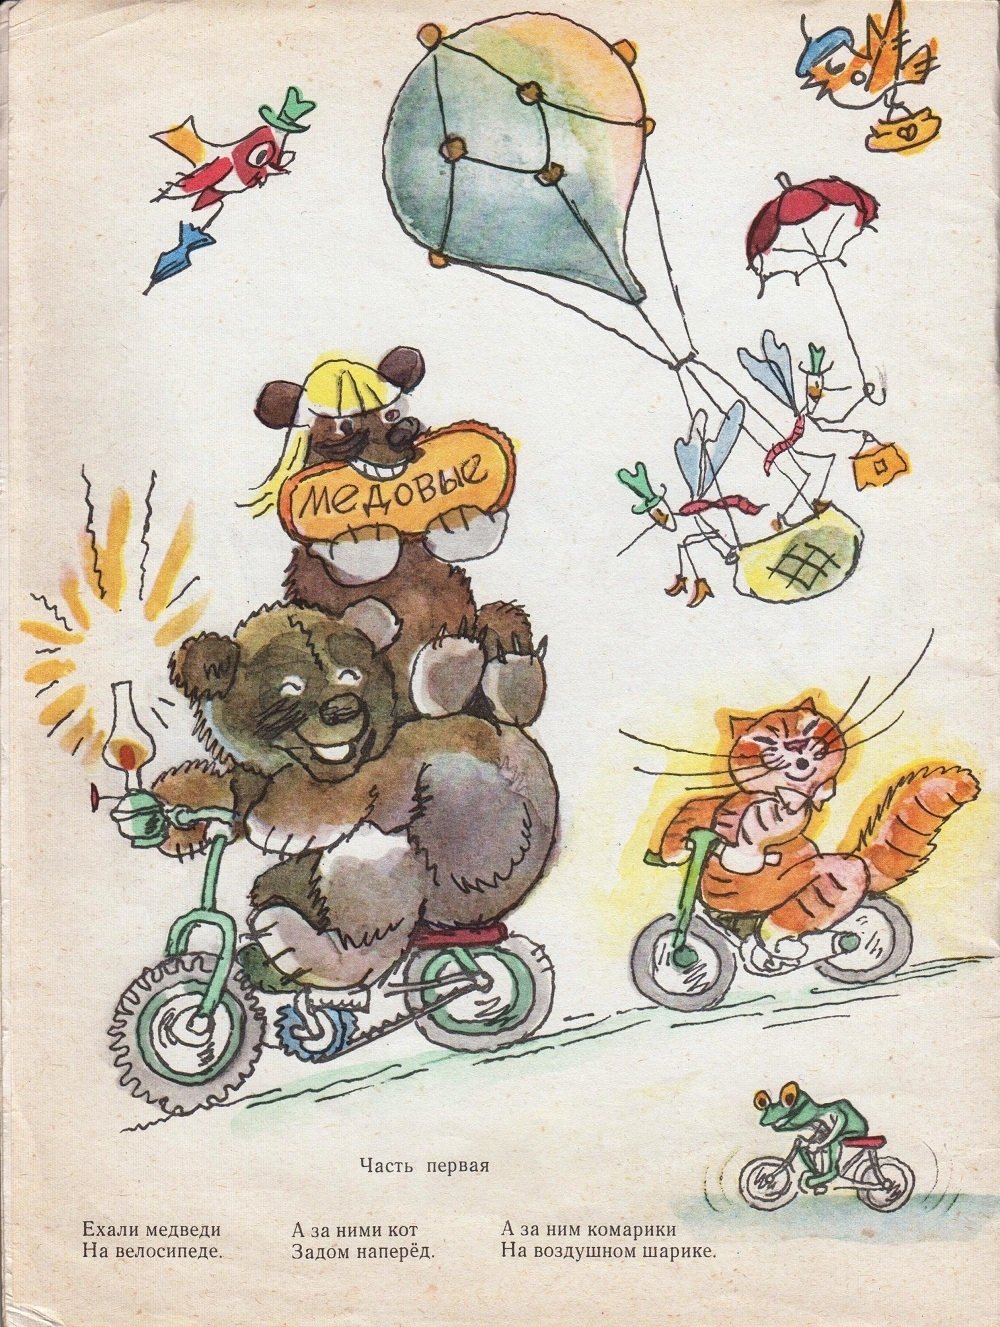 Ехали медведи на велосипеде ремикс. Тараканище Чуковский ехали медведи на велосипеде. Корнея Чуковского Тараканище ехали медведи на велосипеде. Рисунки Чуковский комарики на воздушном шарике.